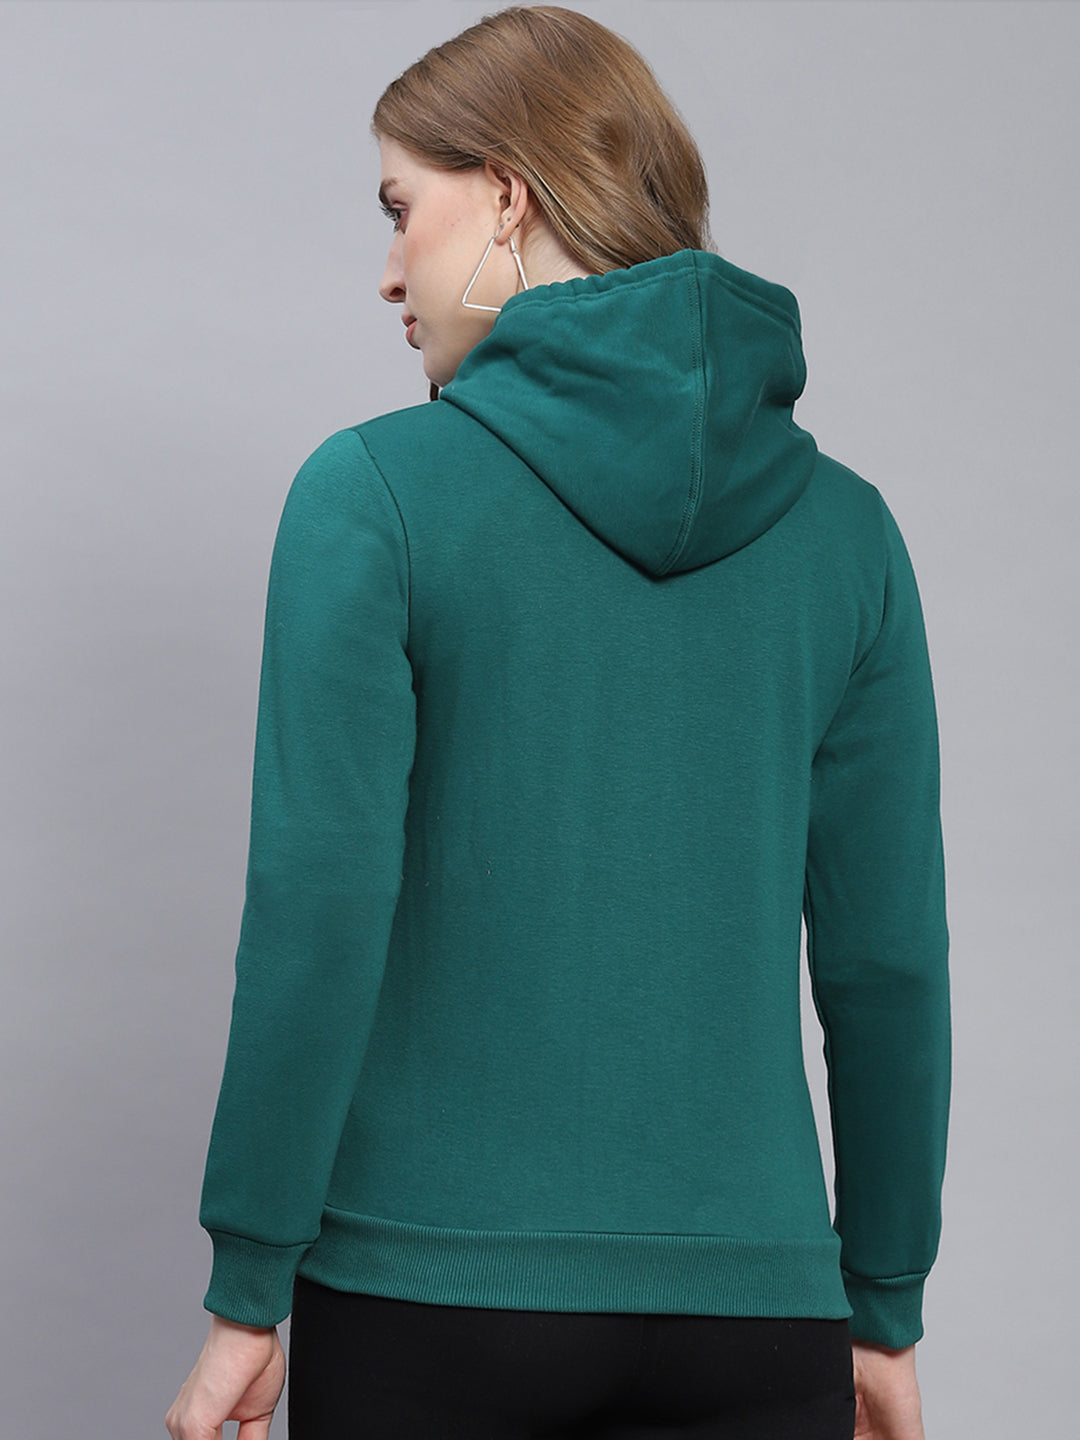 Women Green Solid Hooded Full Sleeve Sweatshirts